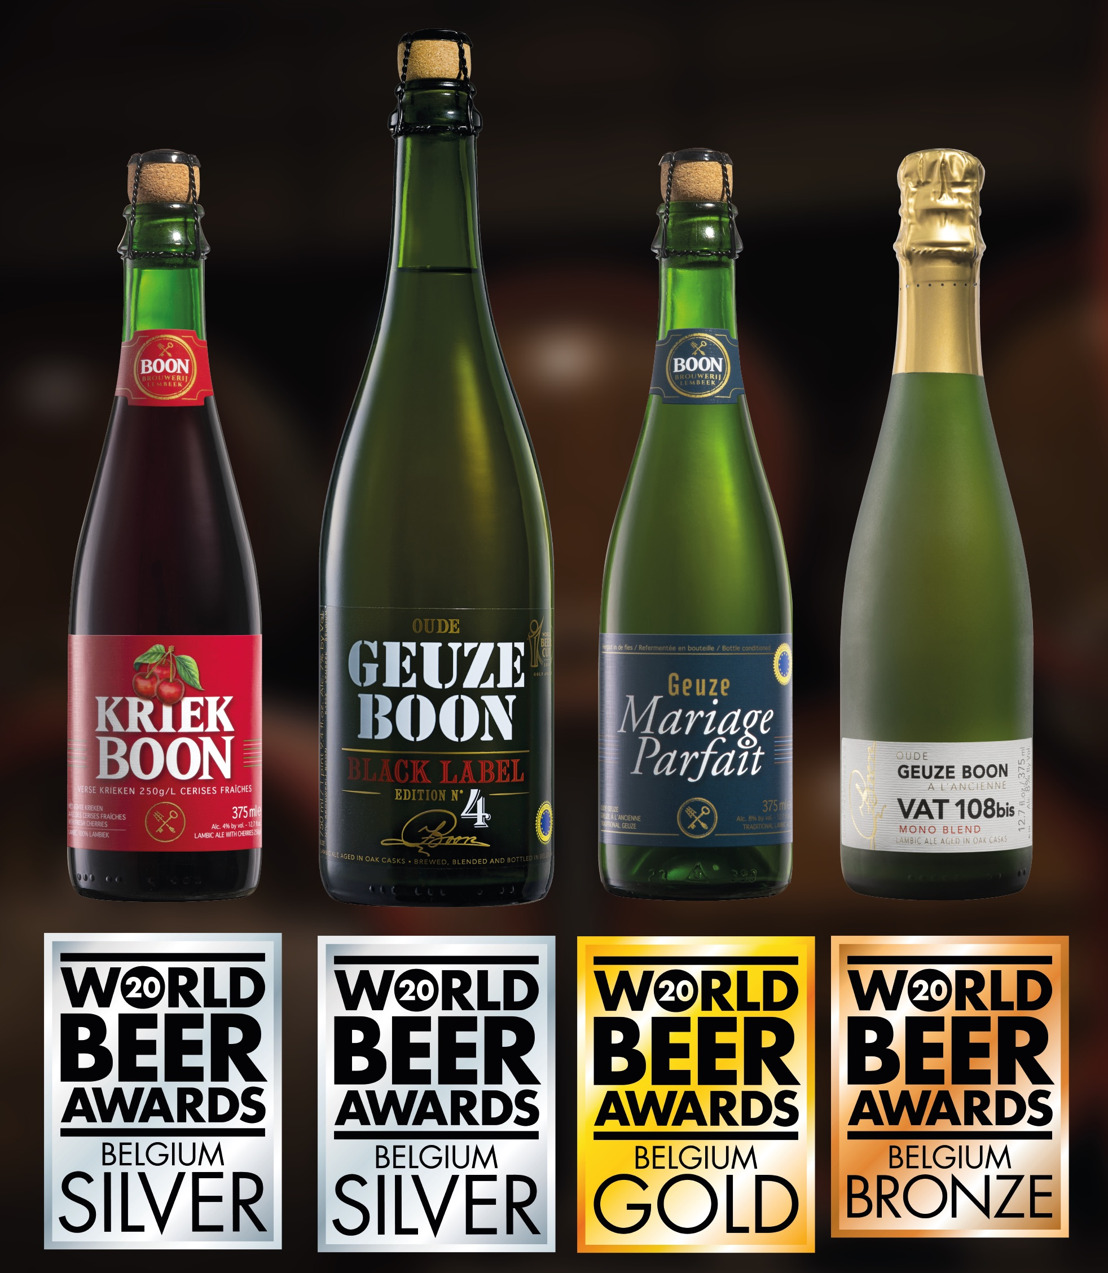 La brasserie Boon remporte la médaille de bronze, d’argent et d'or au World Beer Awards 2020 dans la catégorie "Gueuze"